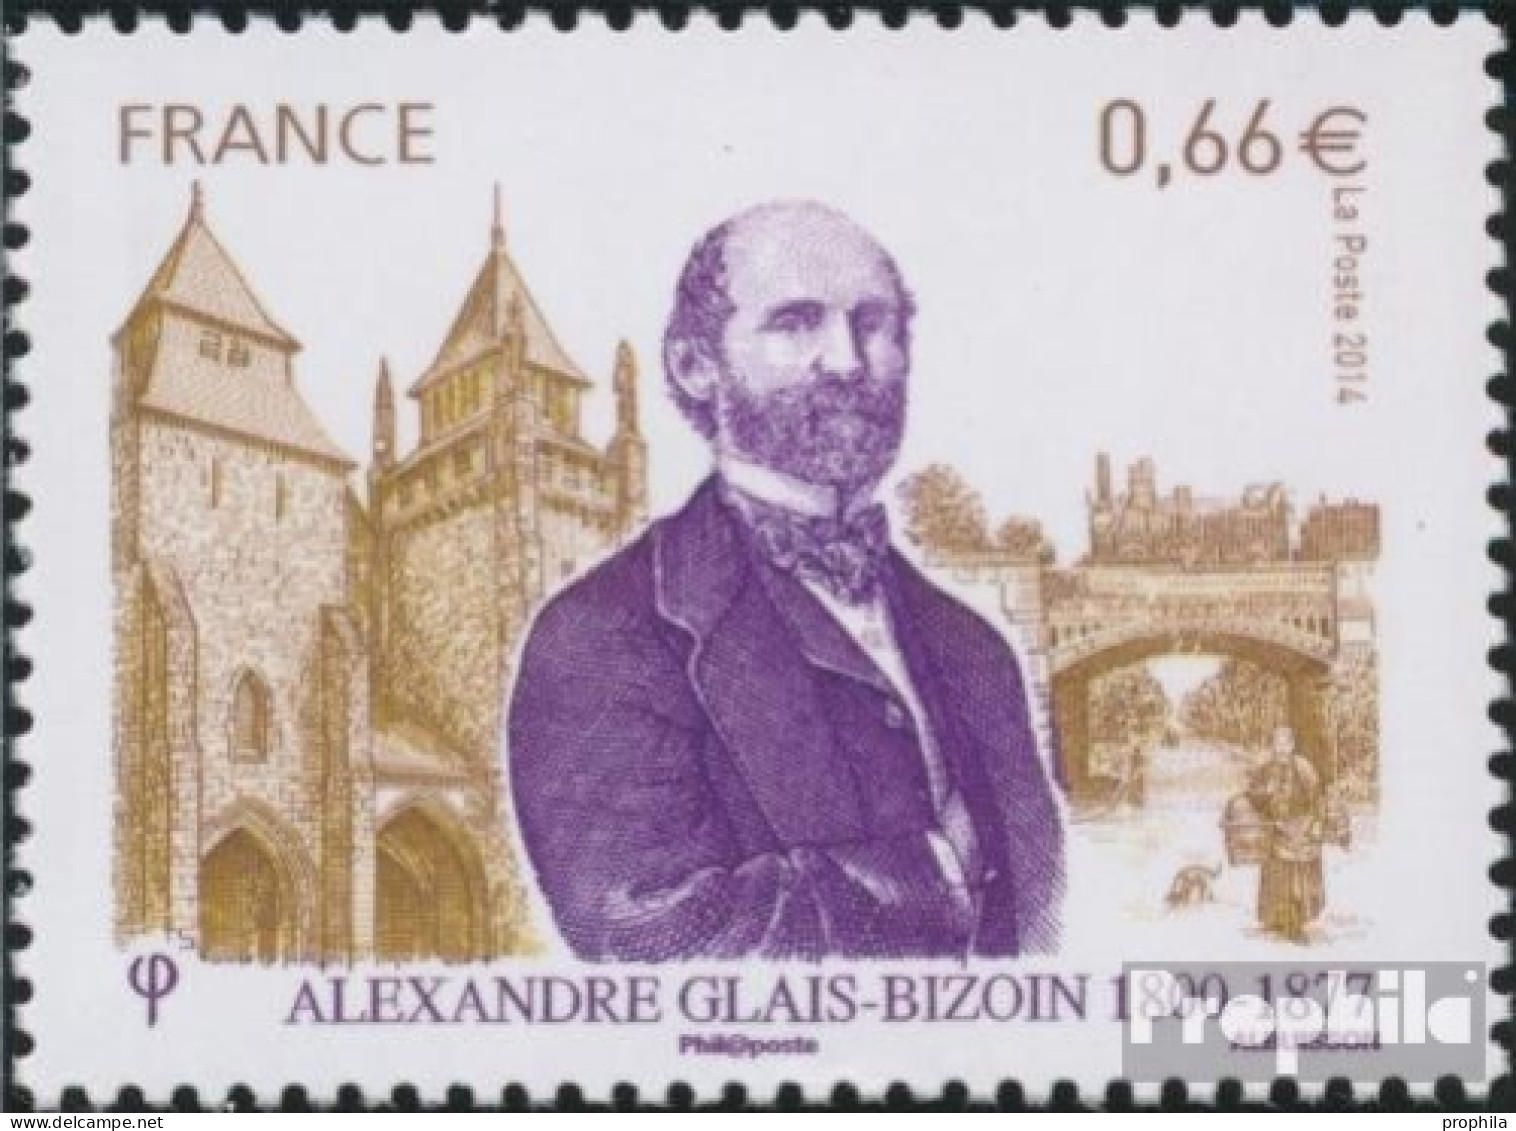 Frankreich 5796 (kompl.Ausg.) Postfrisch 2014 Alexandre Glais Bizoin - Ungebraucht